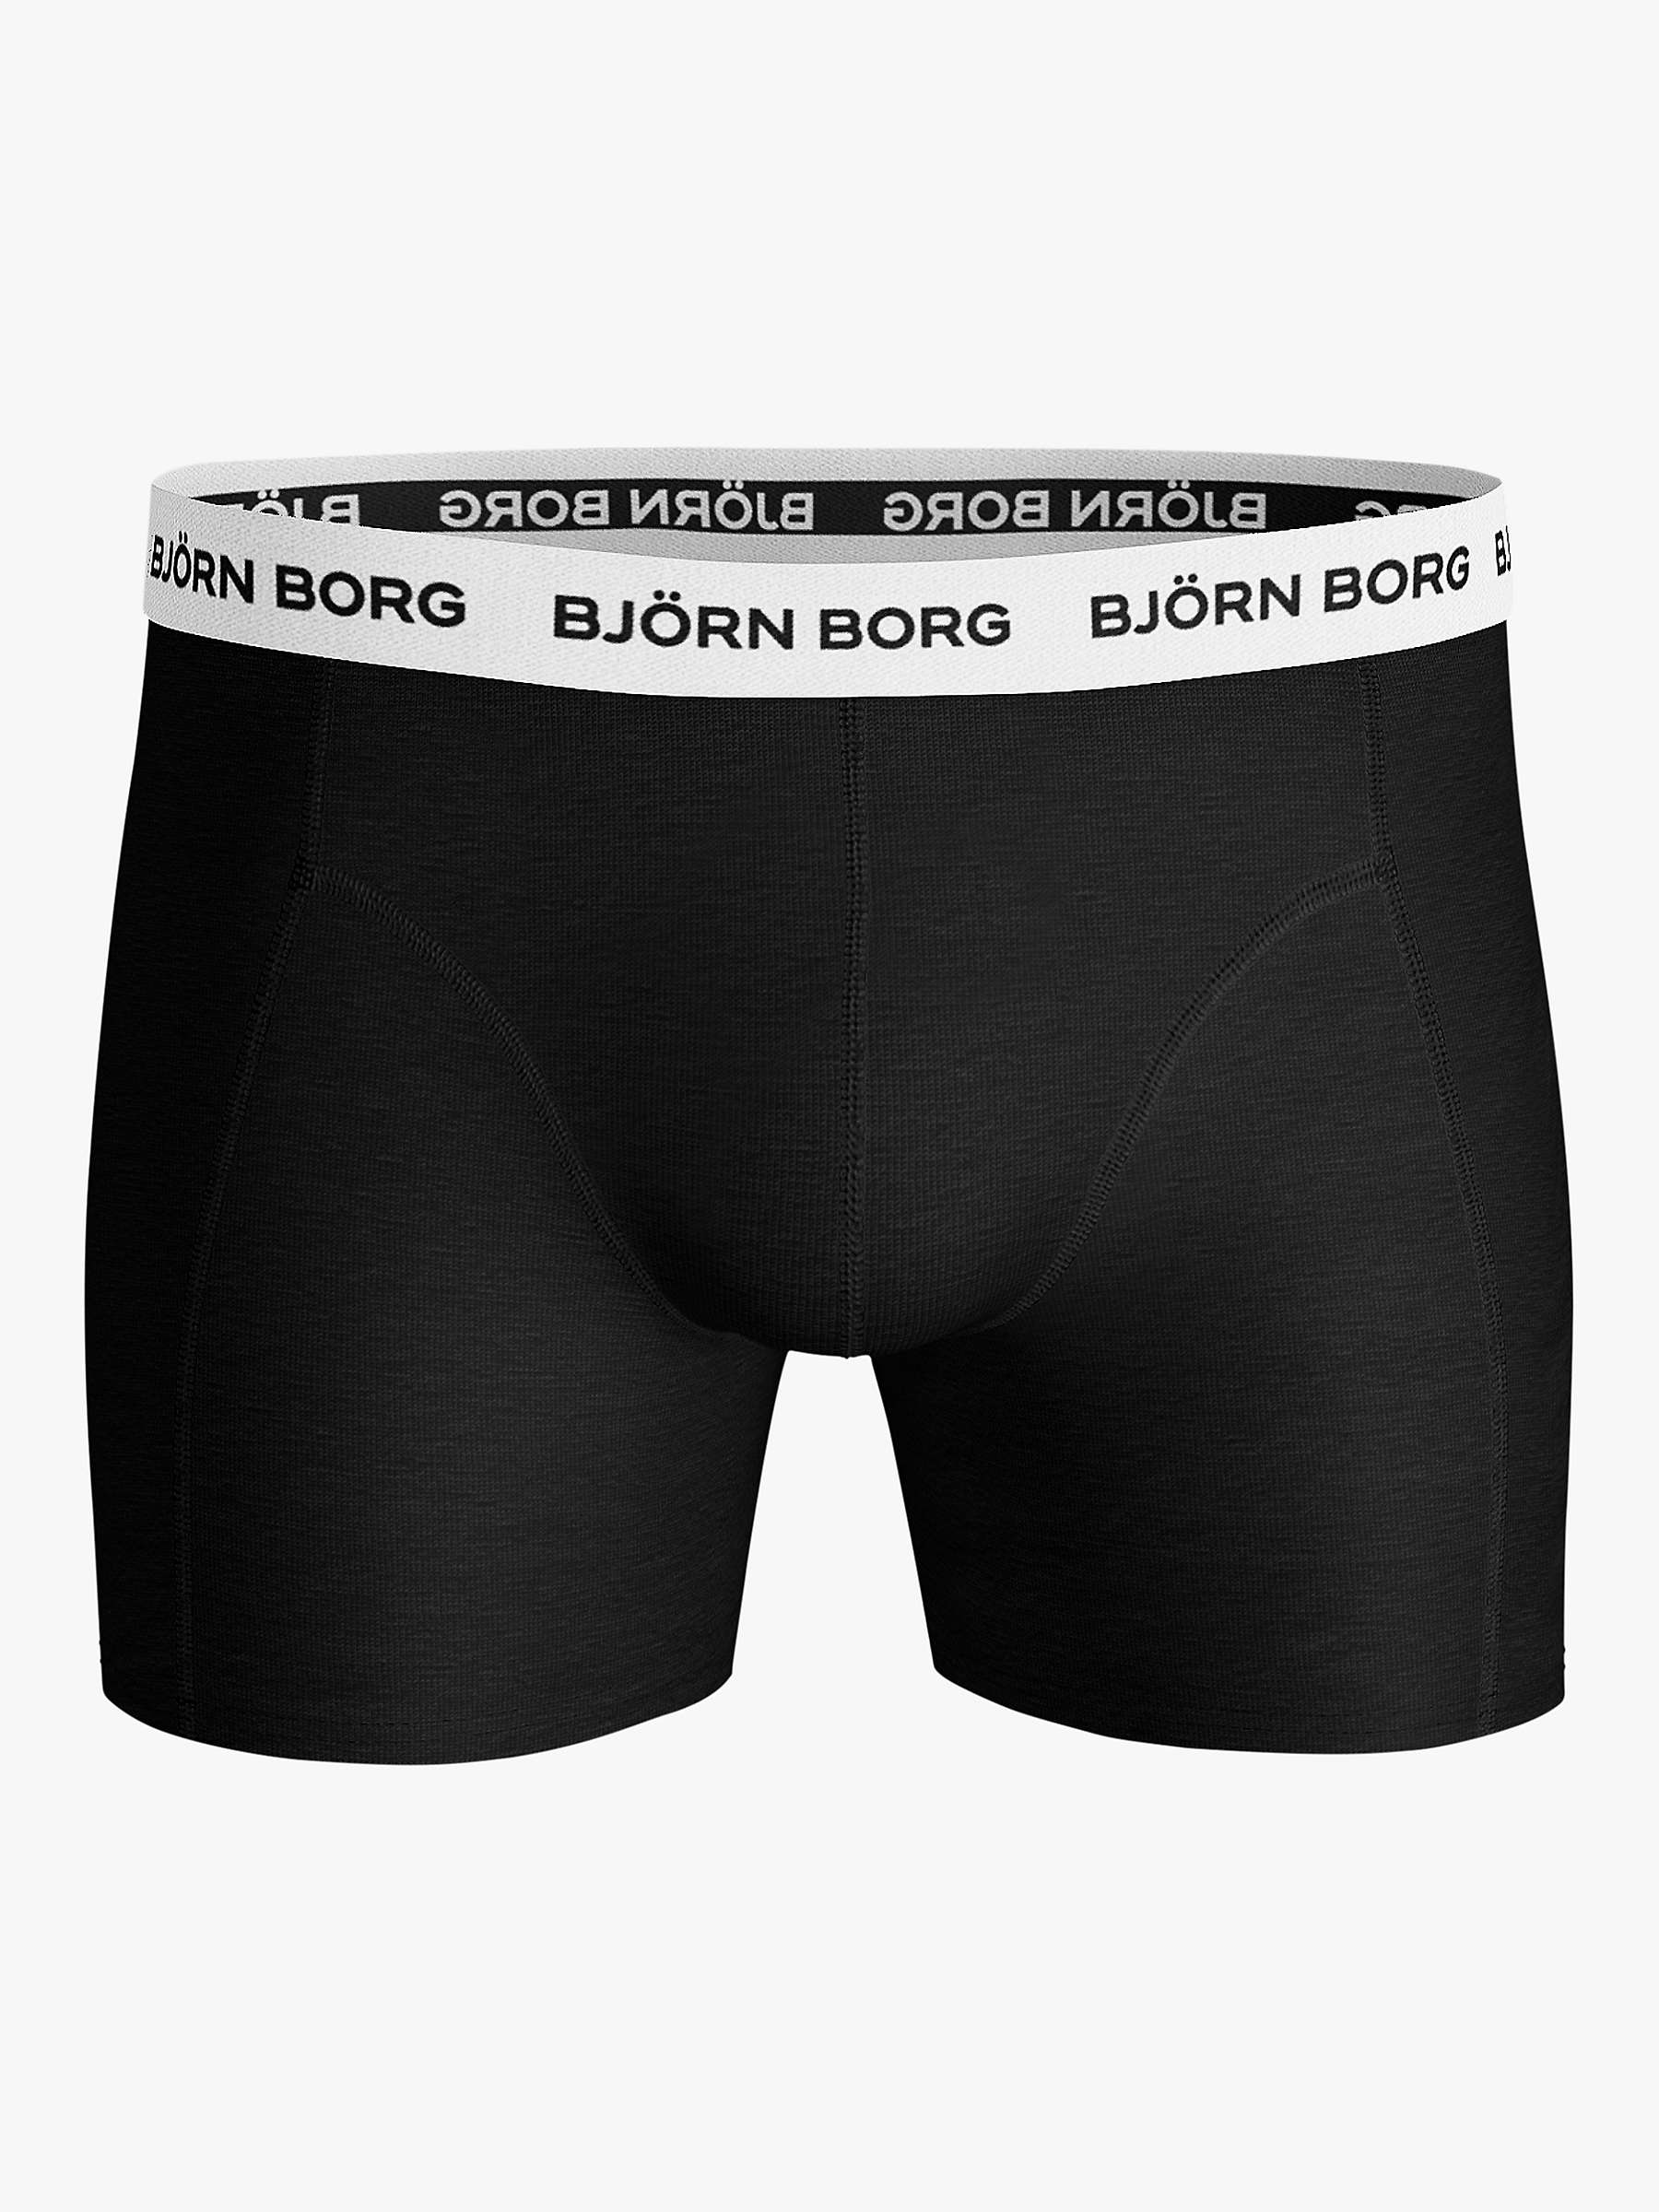 Buy Björn Borg Solid Trunks, Pack of 5, Black Online at johnlewis.com